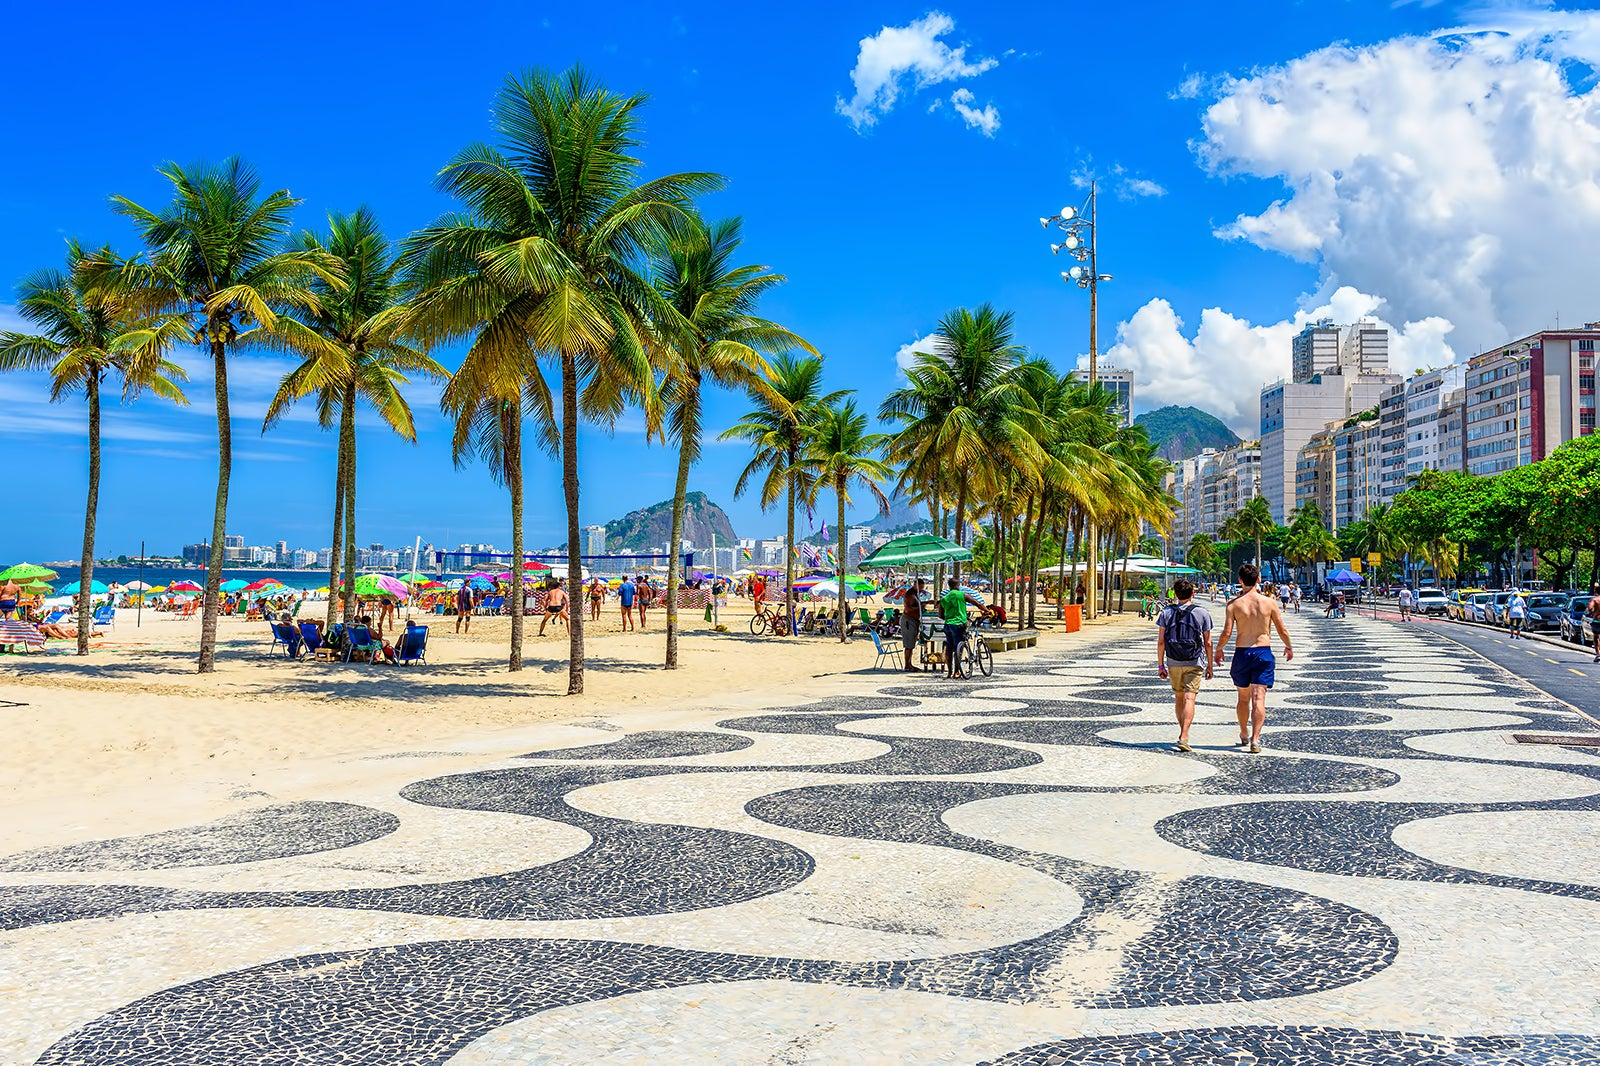 Um clássico do Rio de Janeiro, Copacabana atrai visitantes com sua famosa calçada, areias douradas e vibrante vida noturna. Reprodução/Wowtickets.com